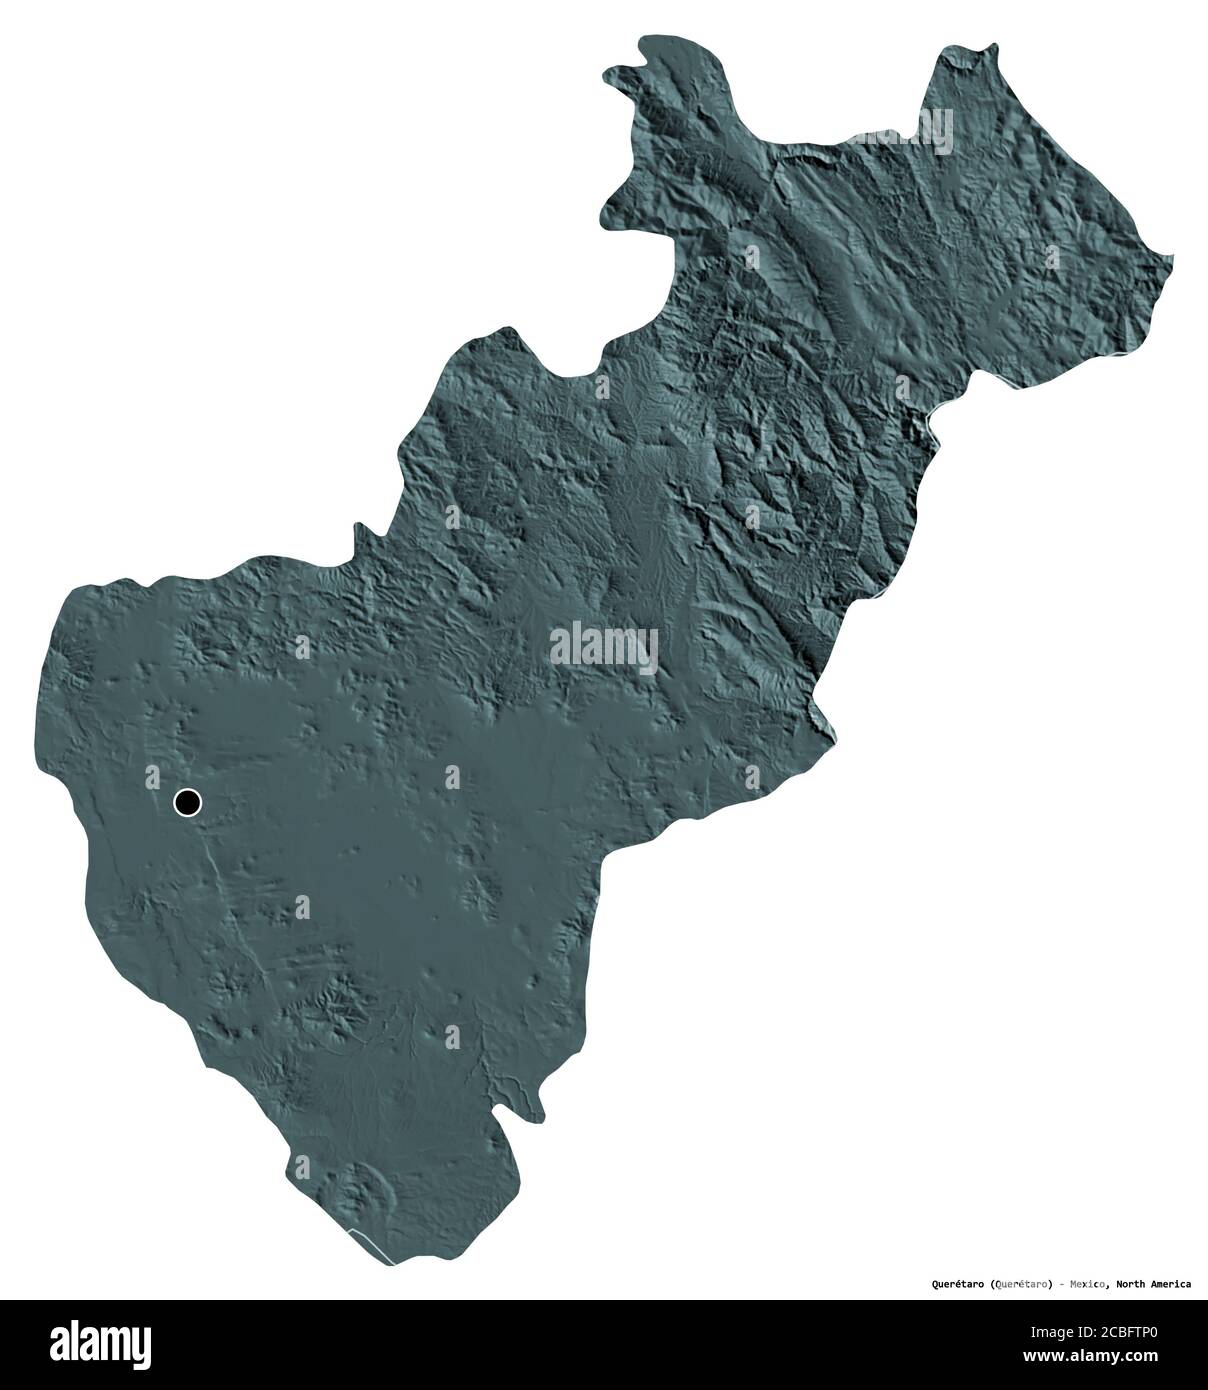 Forme de Querétaro, état du Mexique, avec sa capitale isolée sur fond blanc. Carte d'altitude en couleur. Rendu 3D Banque D'Images